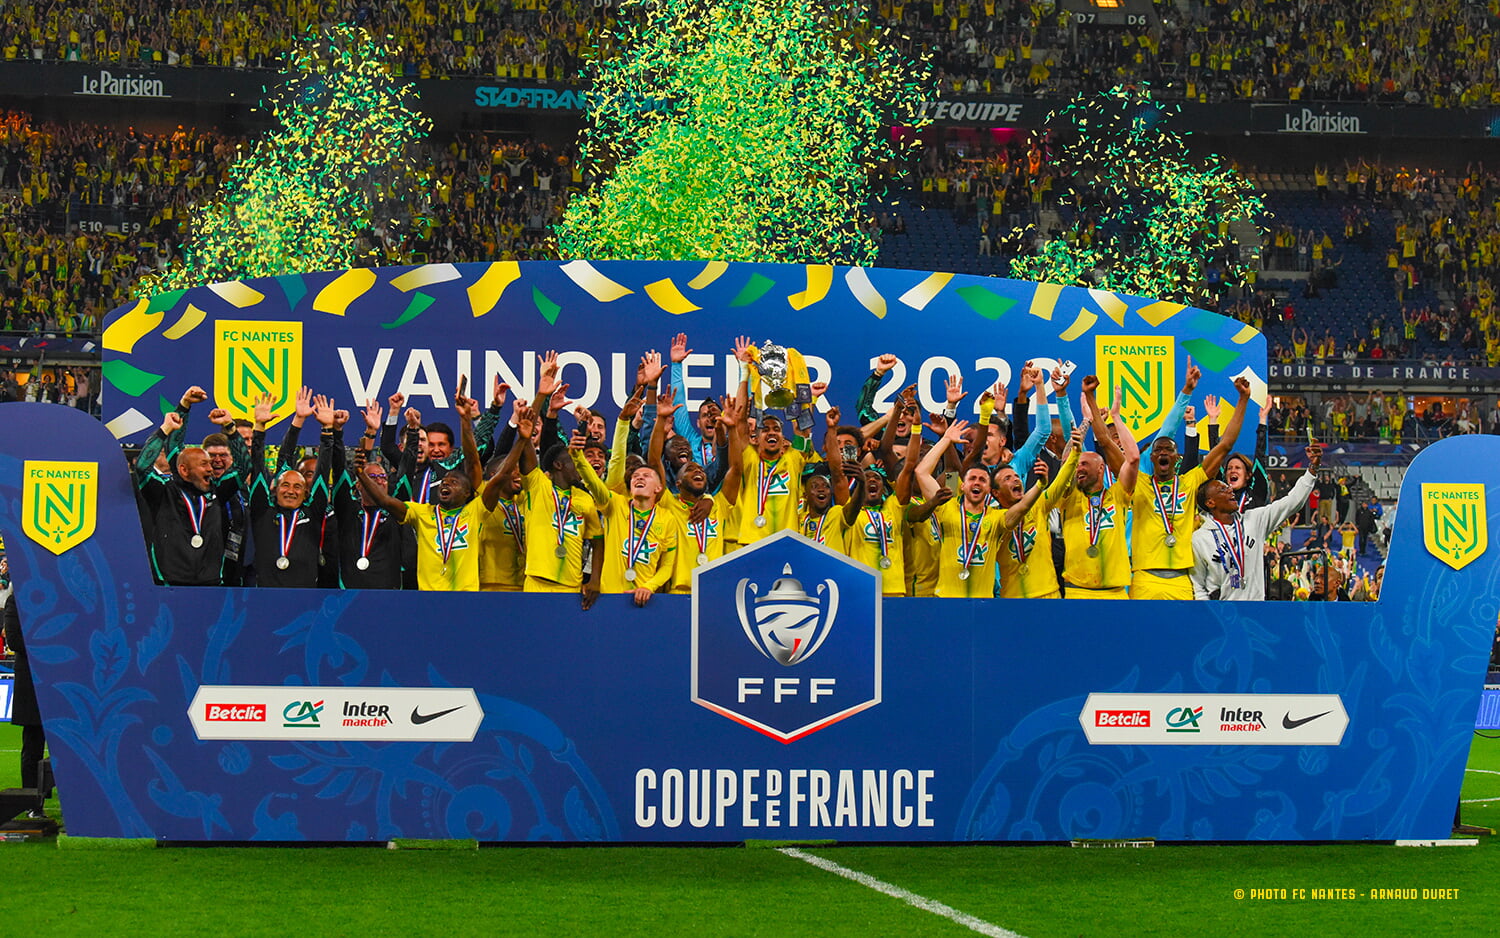 Nantes celebrating their last Coupe de France title